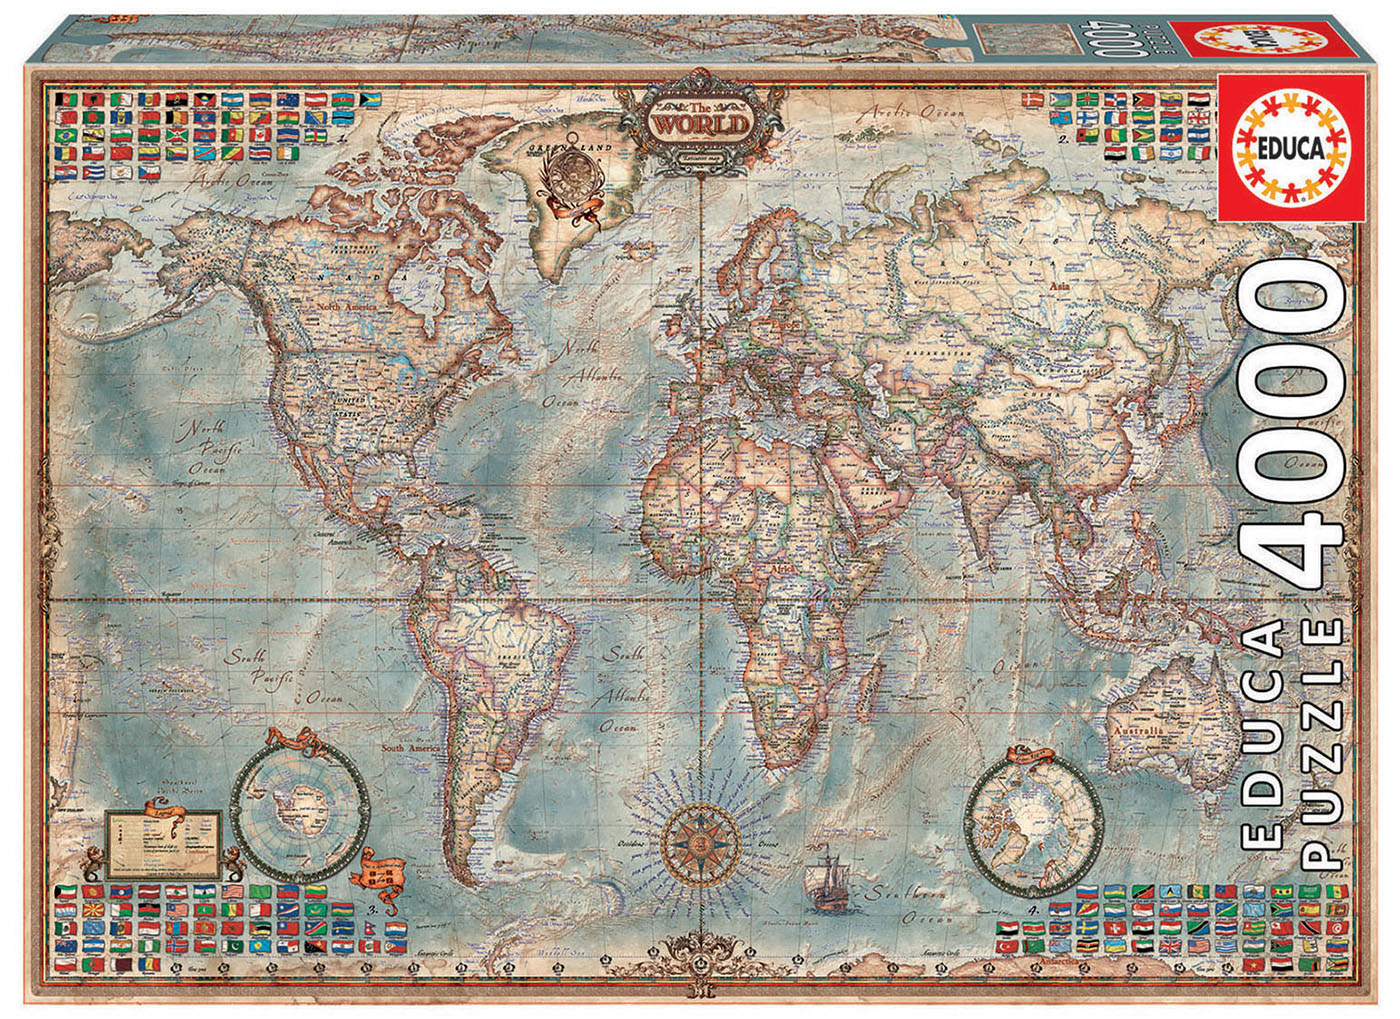 4000 The world, executive map - Educa Borras